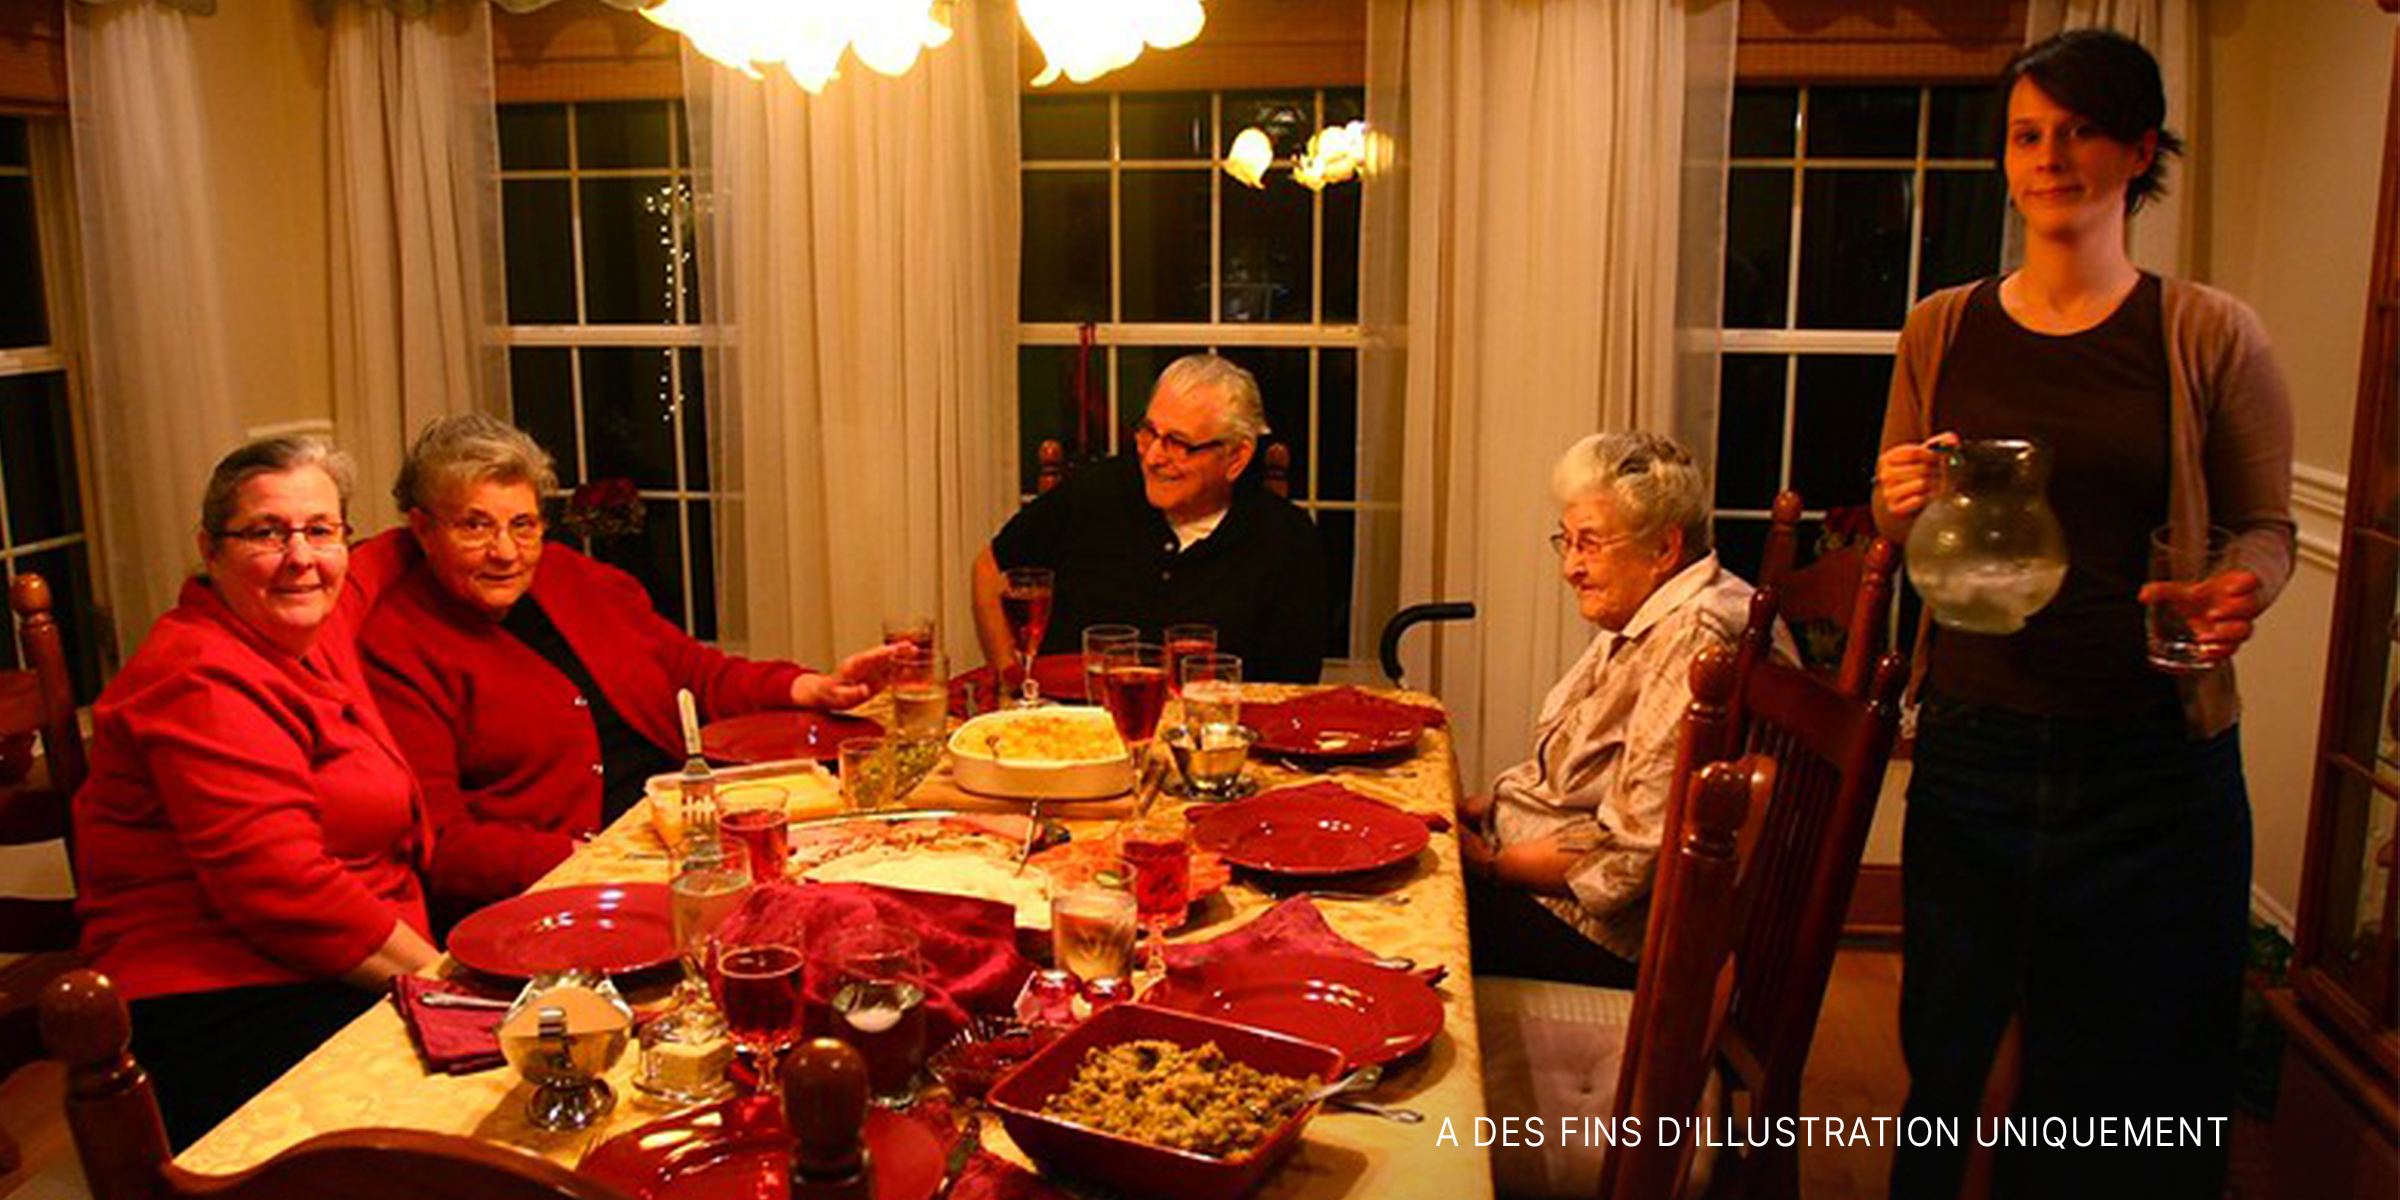 Une femme serveur se tient près d'une famille réunie pour le repas de Noël | Source : Flickr.com/Martin Cathrae/CC BY-SA 2.0